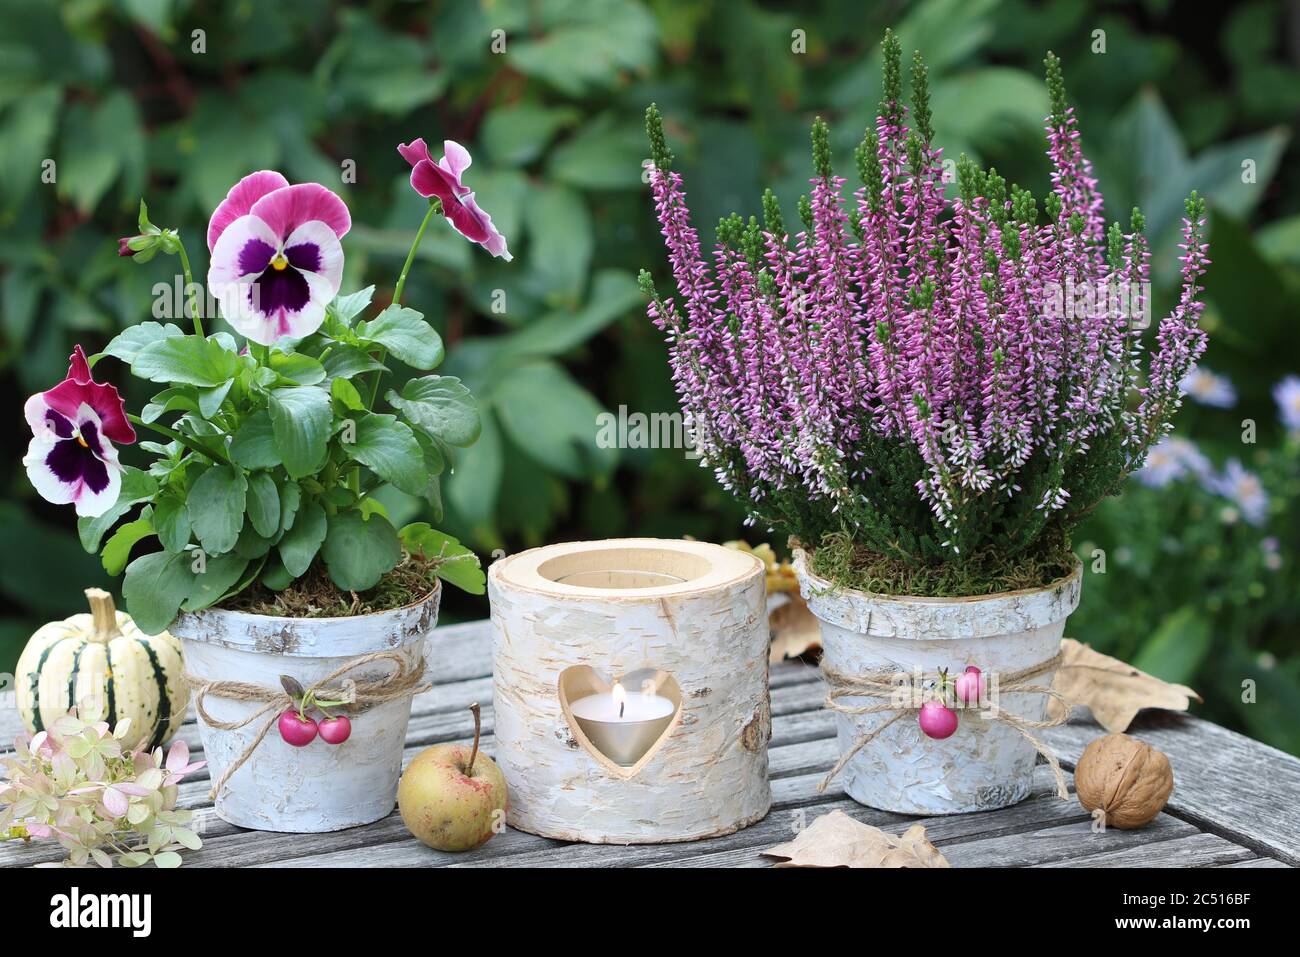 décoration rustique d'automne avec fleurs roses dans des pots en écorce de bouleau et lanterne de table Banque D'Images